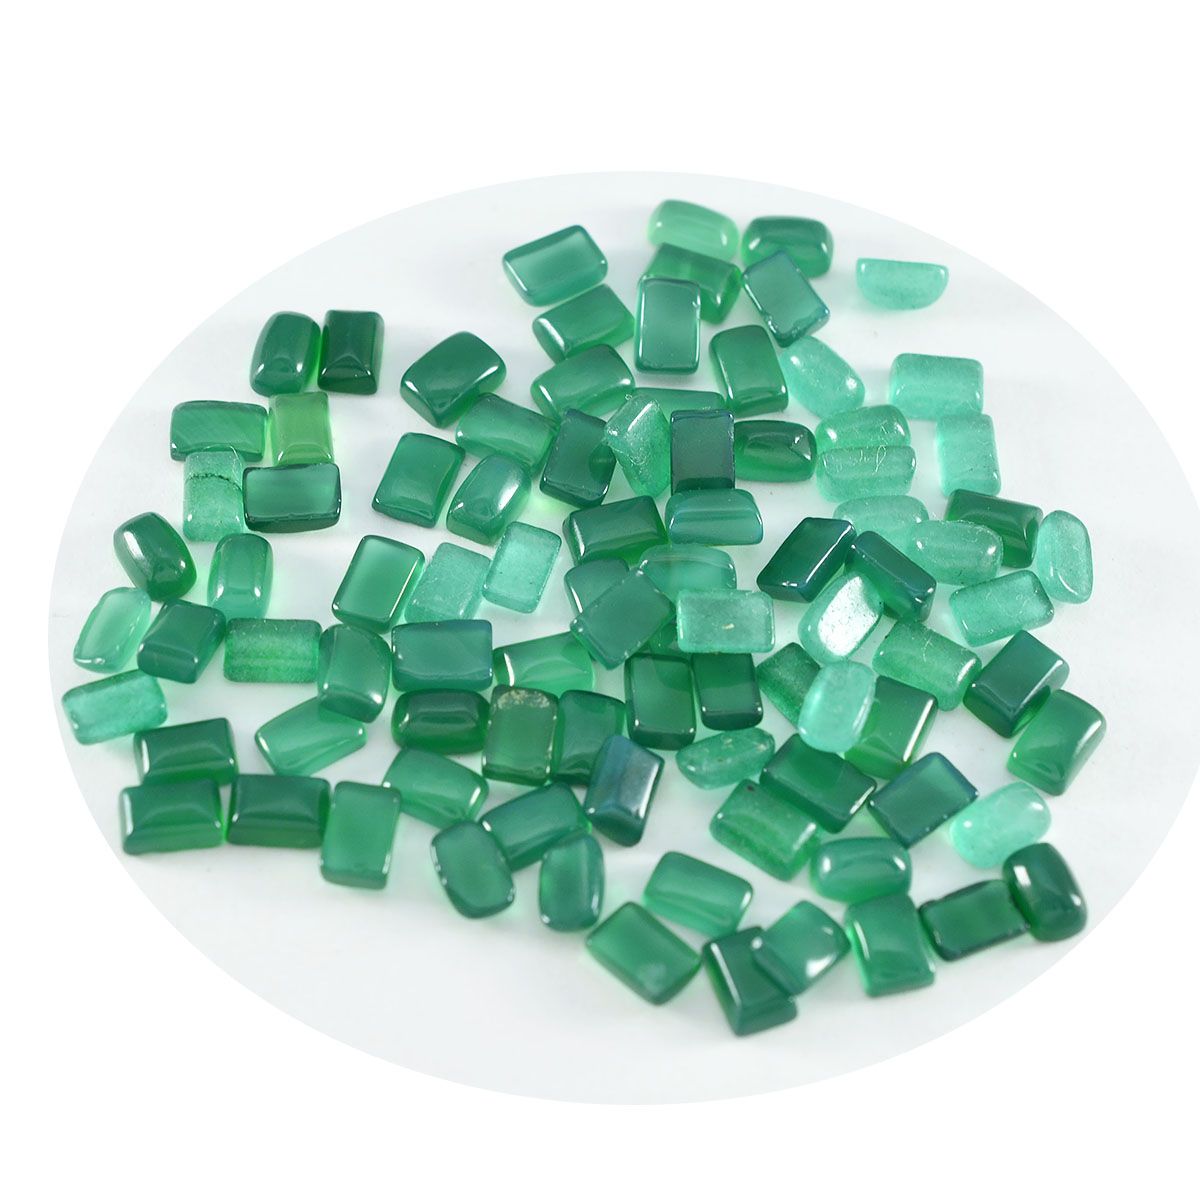 riyogems 1 шт., зеленый оникс, кабошон 4x6 мм, восьмиугольная форма, драгоценный камень хорошего качества